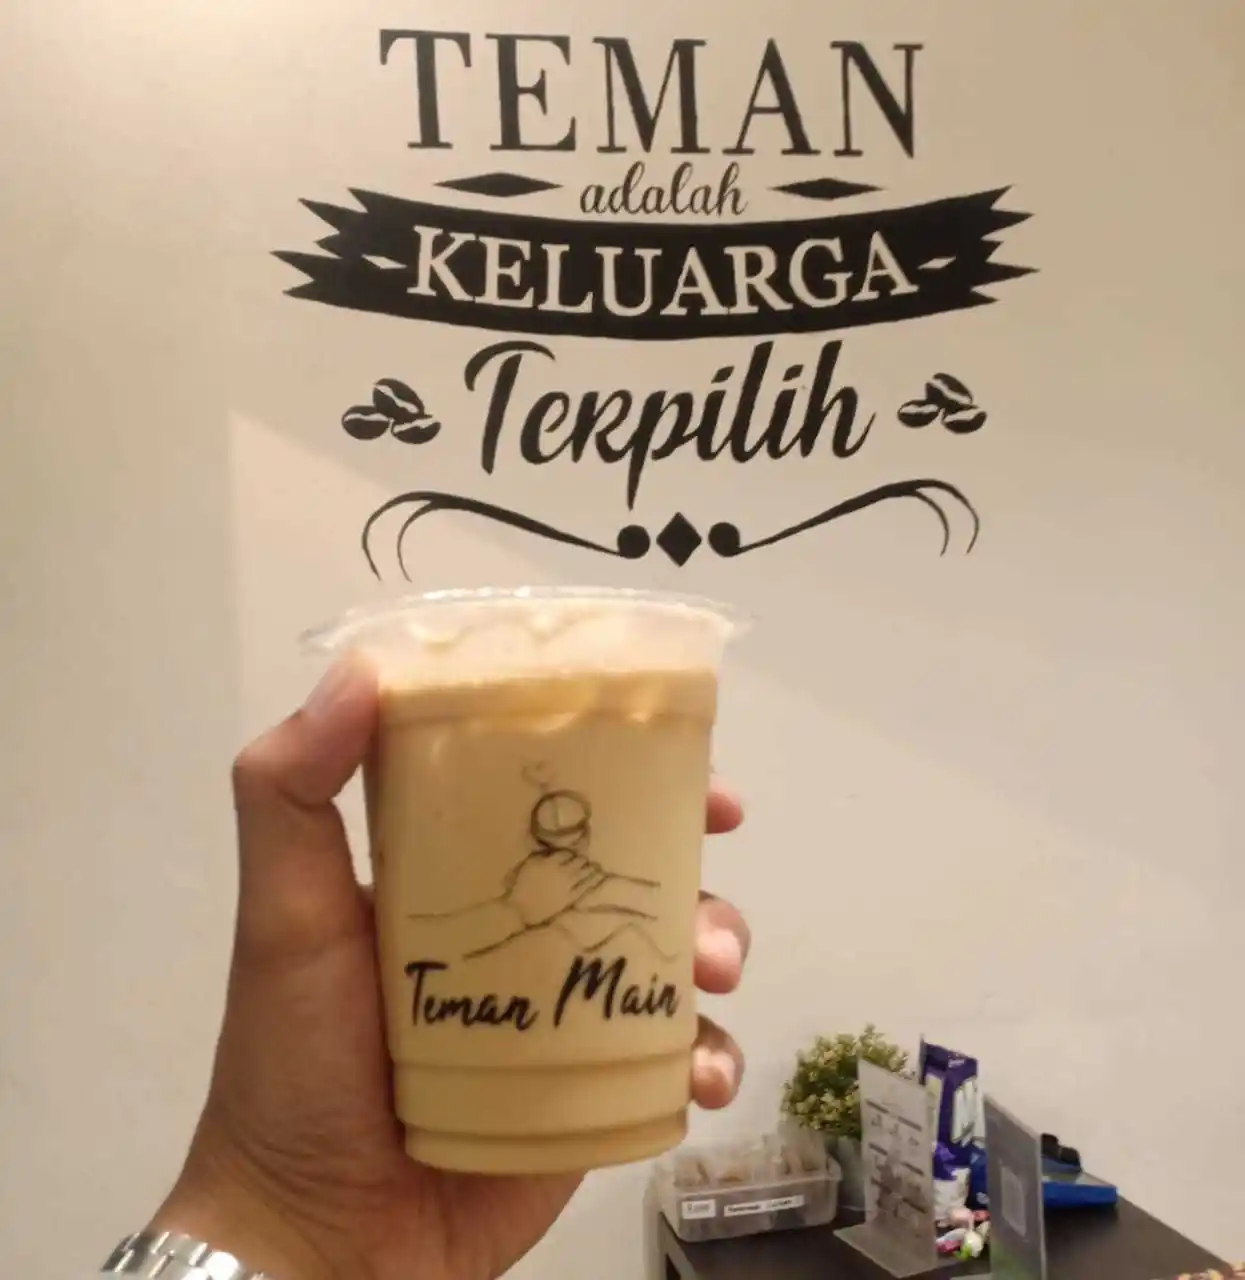 Teman Main Coffee